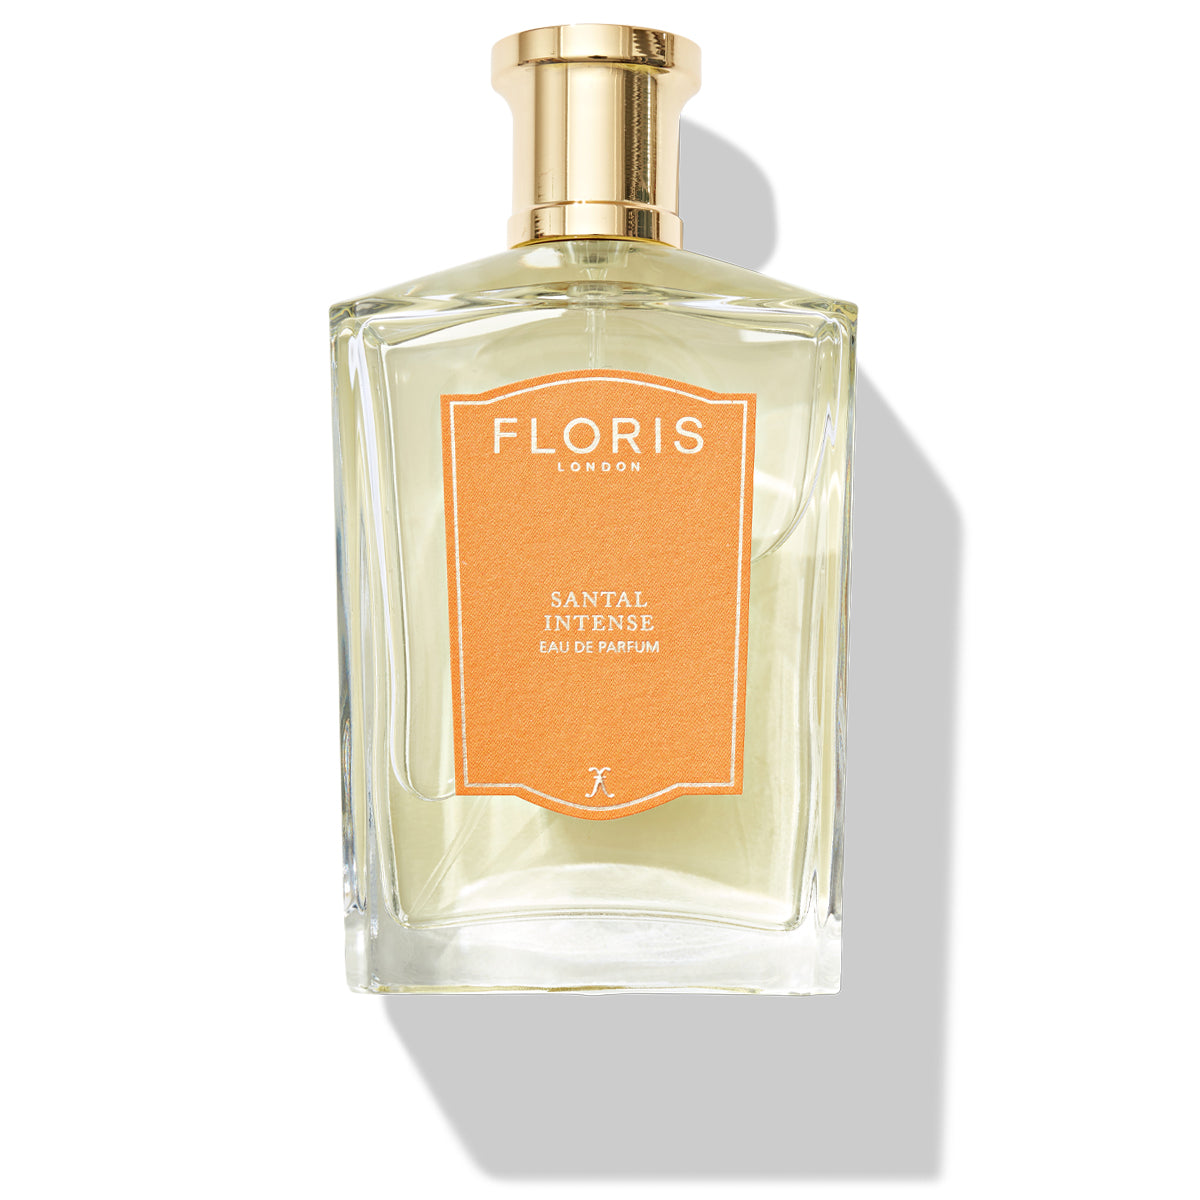 Floris London | Eau de Parfum – Floris London UK